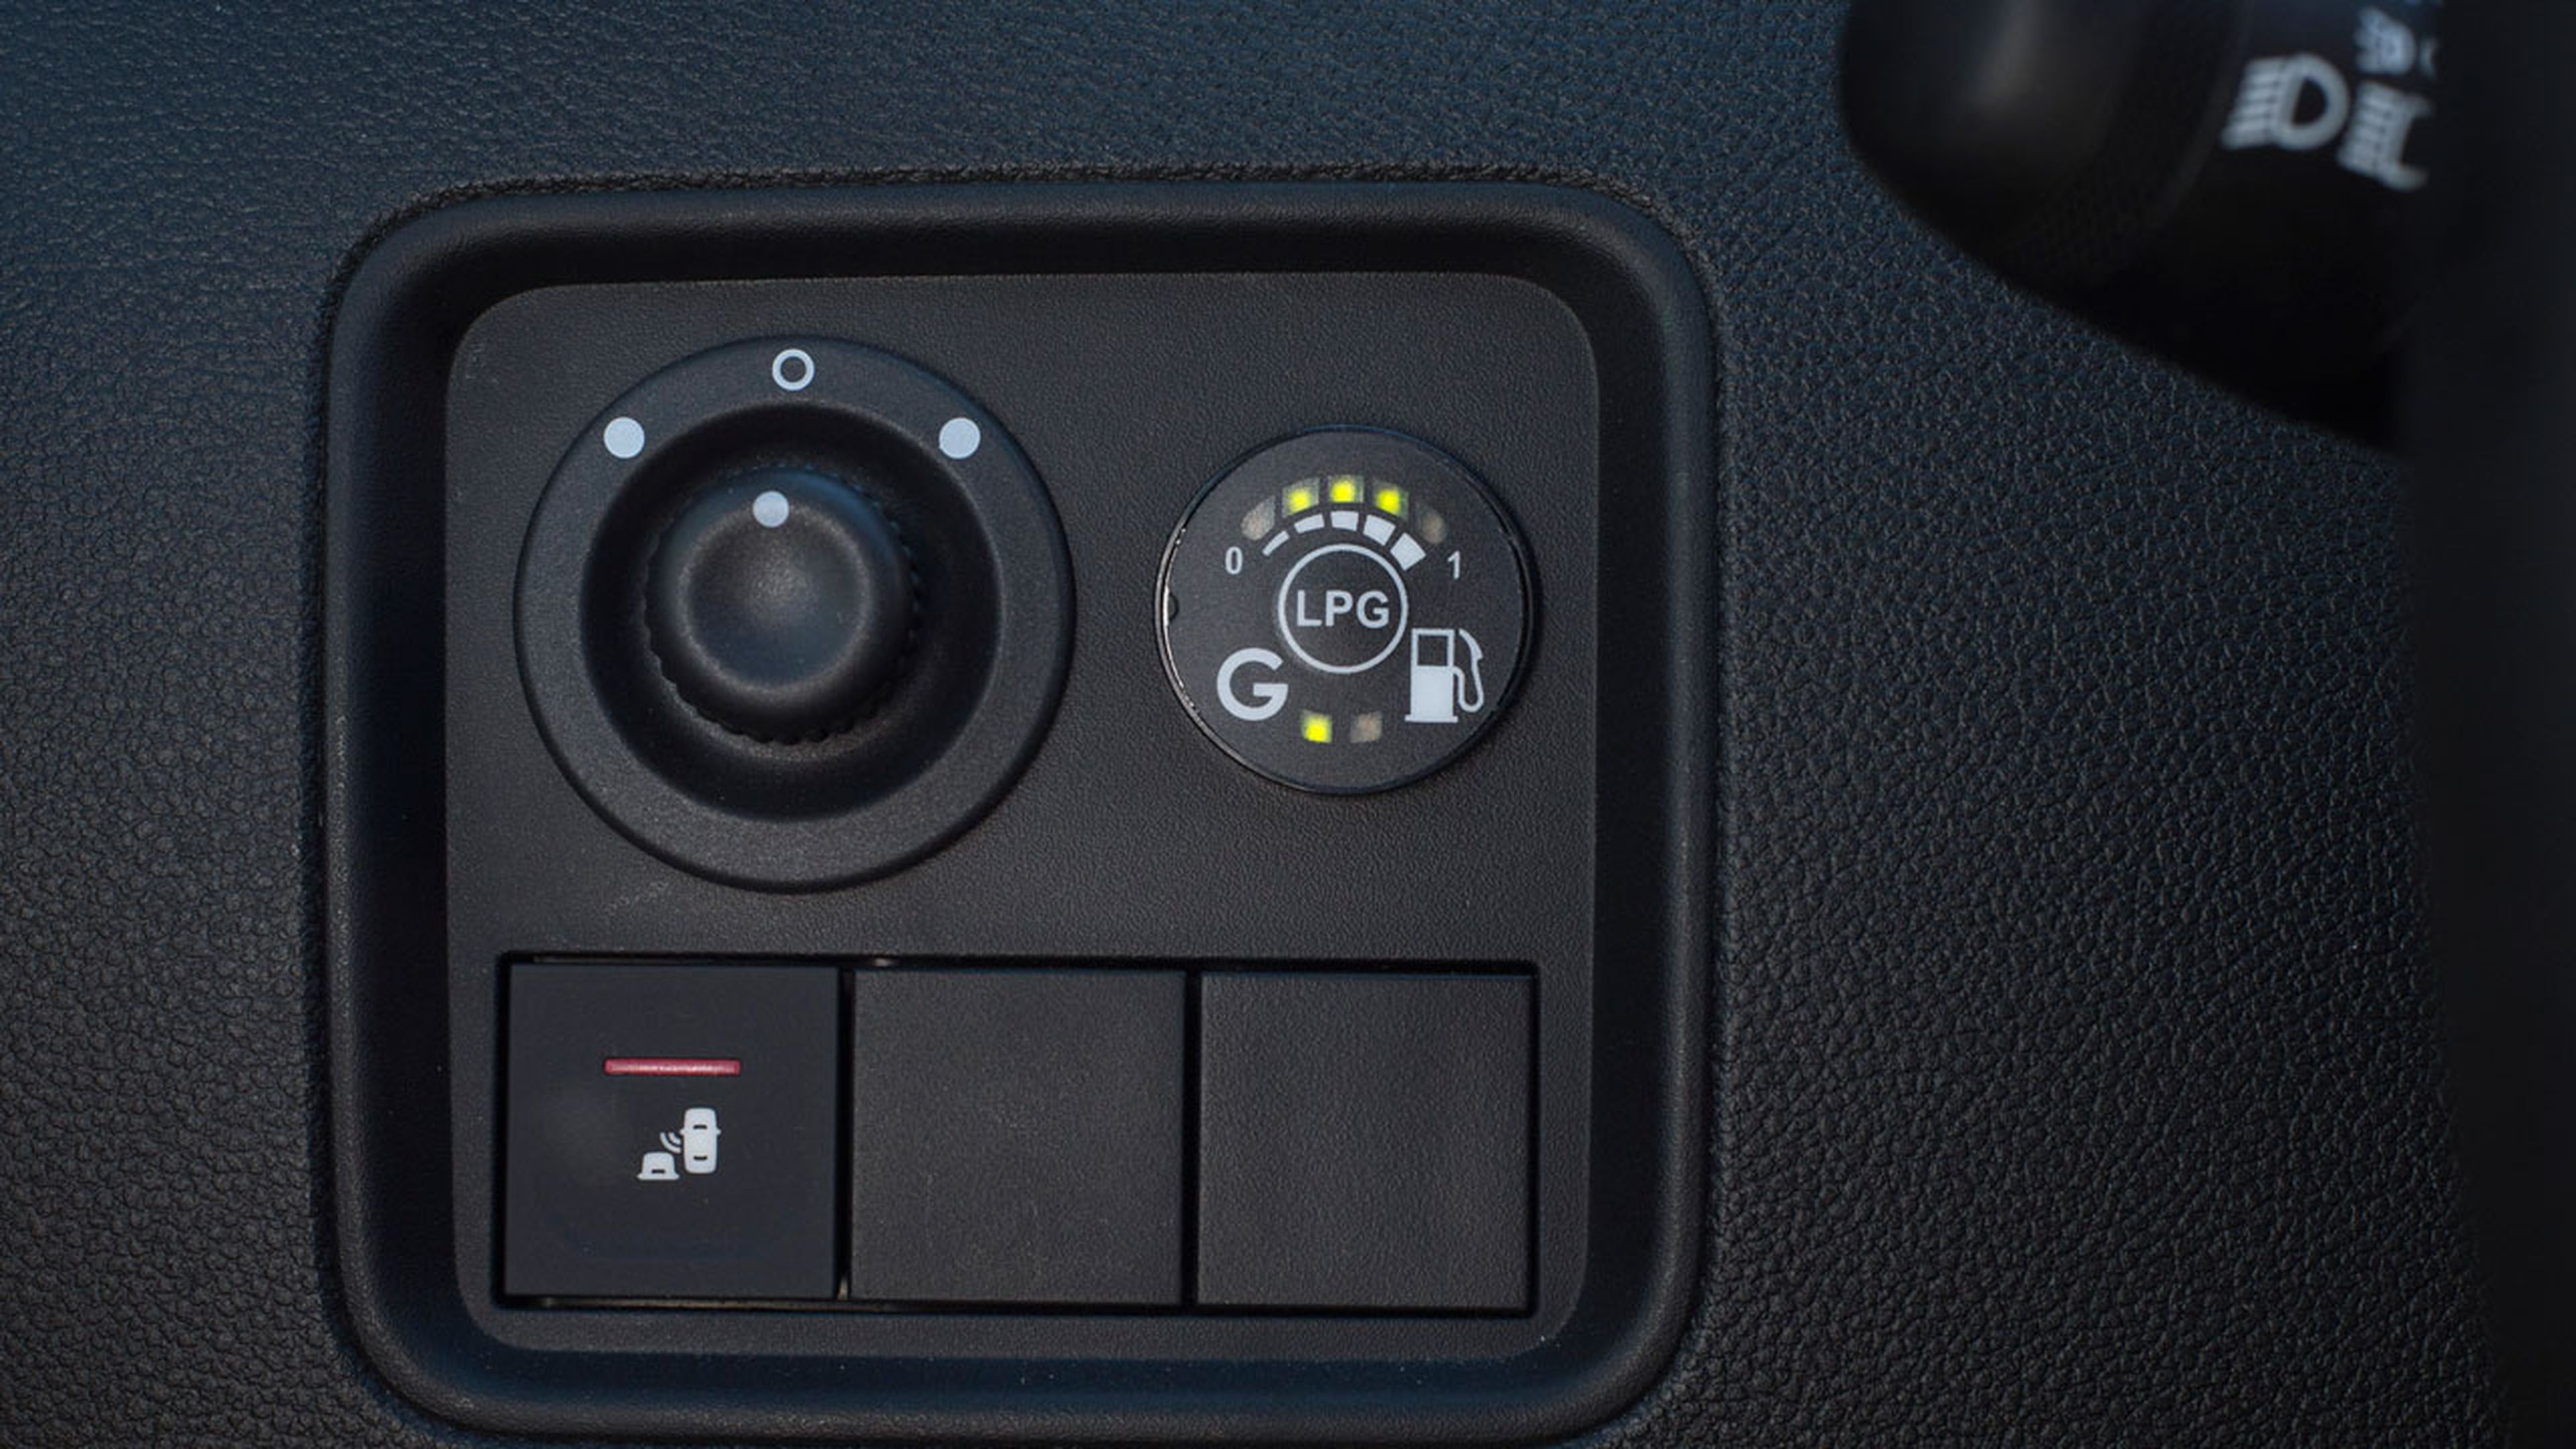 Con este botón puedes cambiar manualmente entre ambos combustibles